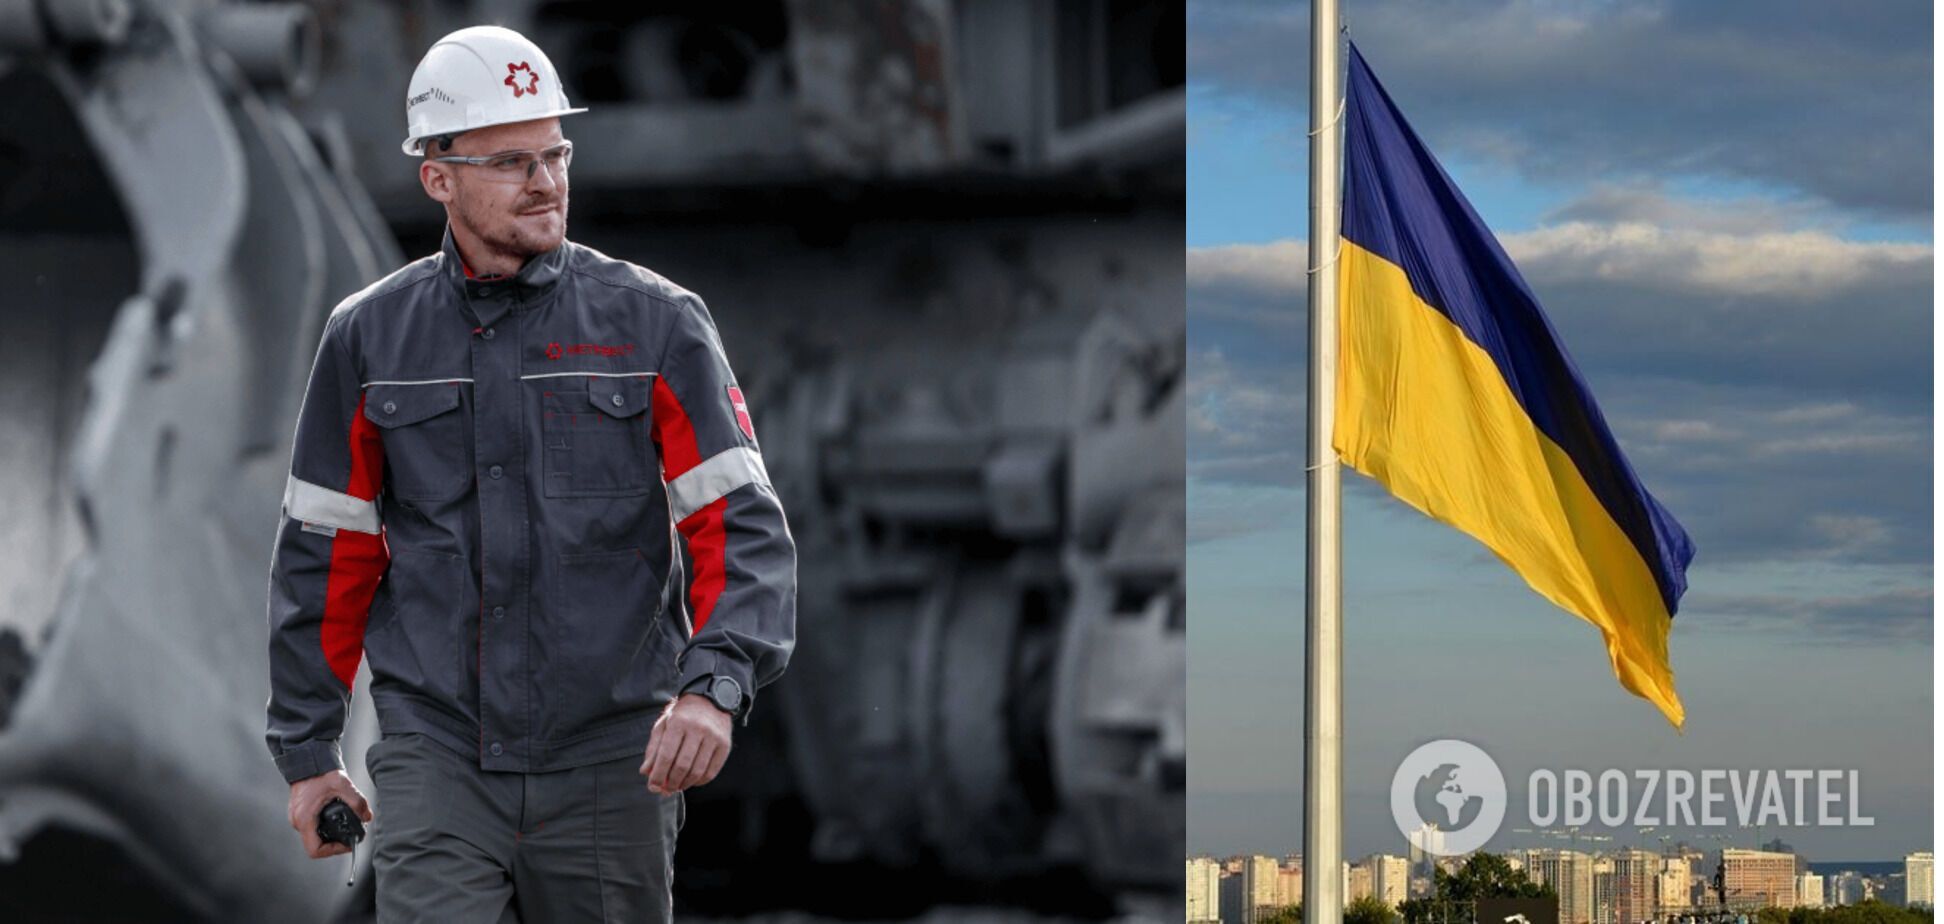 'Запоріжсталь' підняв прапор України на найвищій точці над Дніпром. Фото